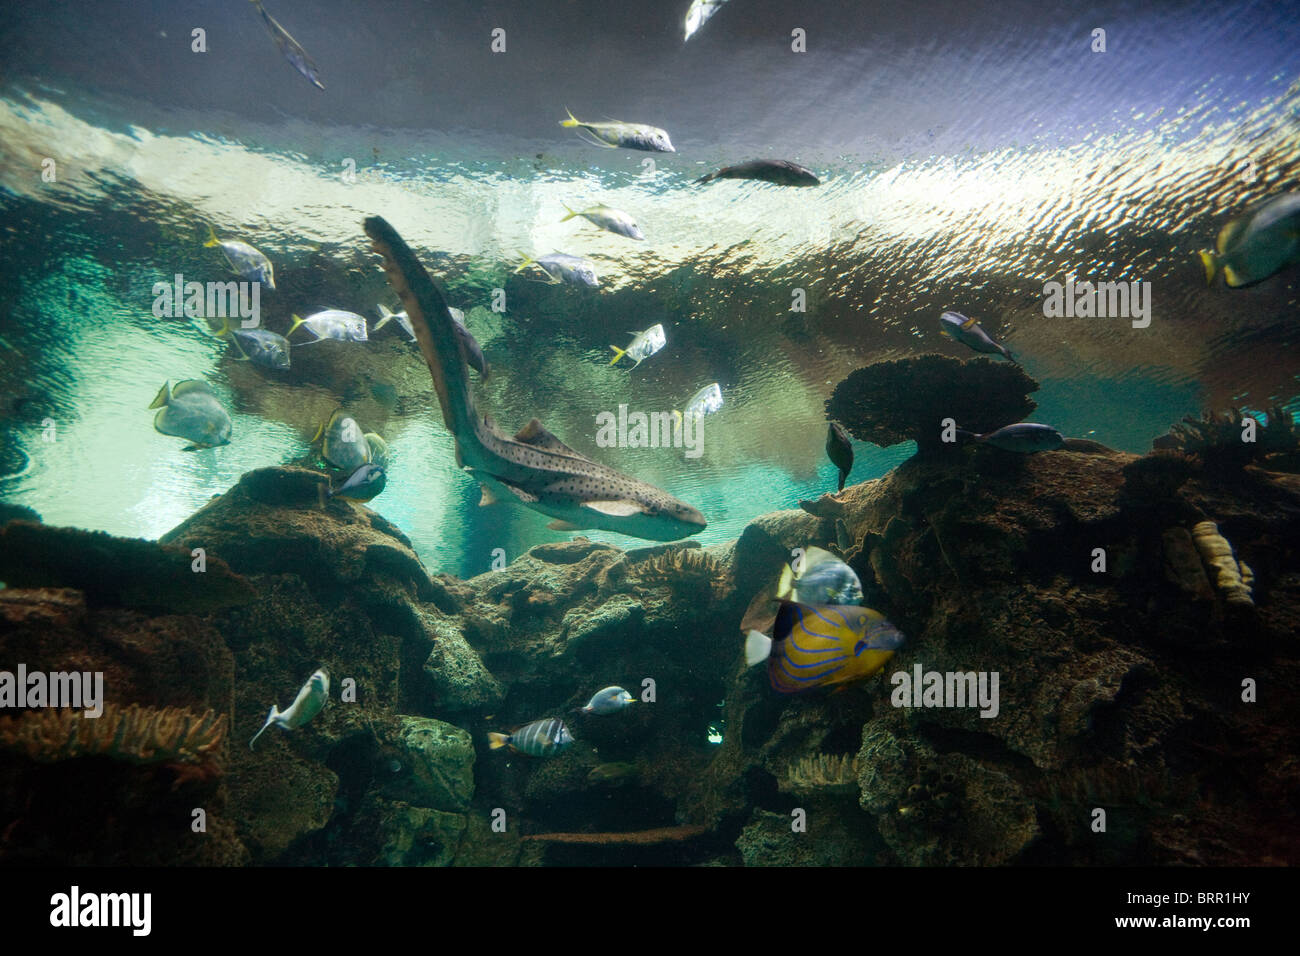 Leopard shark in Shark Reef aquarium, Mandalay Bay Hotel, Las Vegas USA Stock Photo